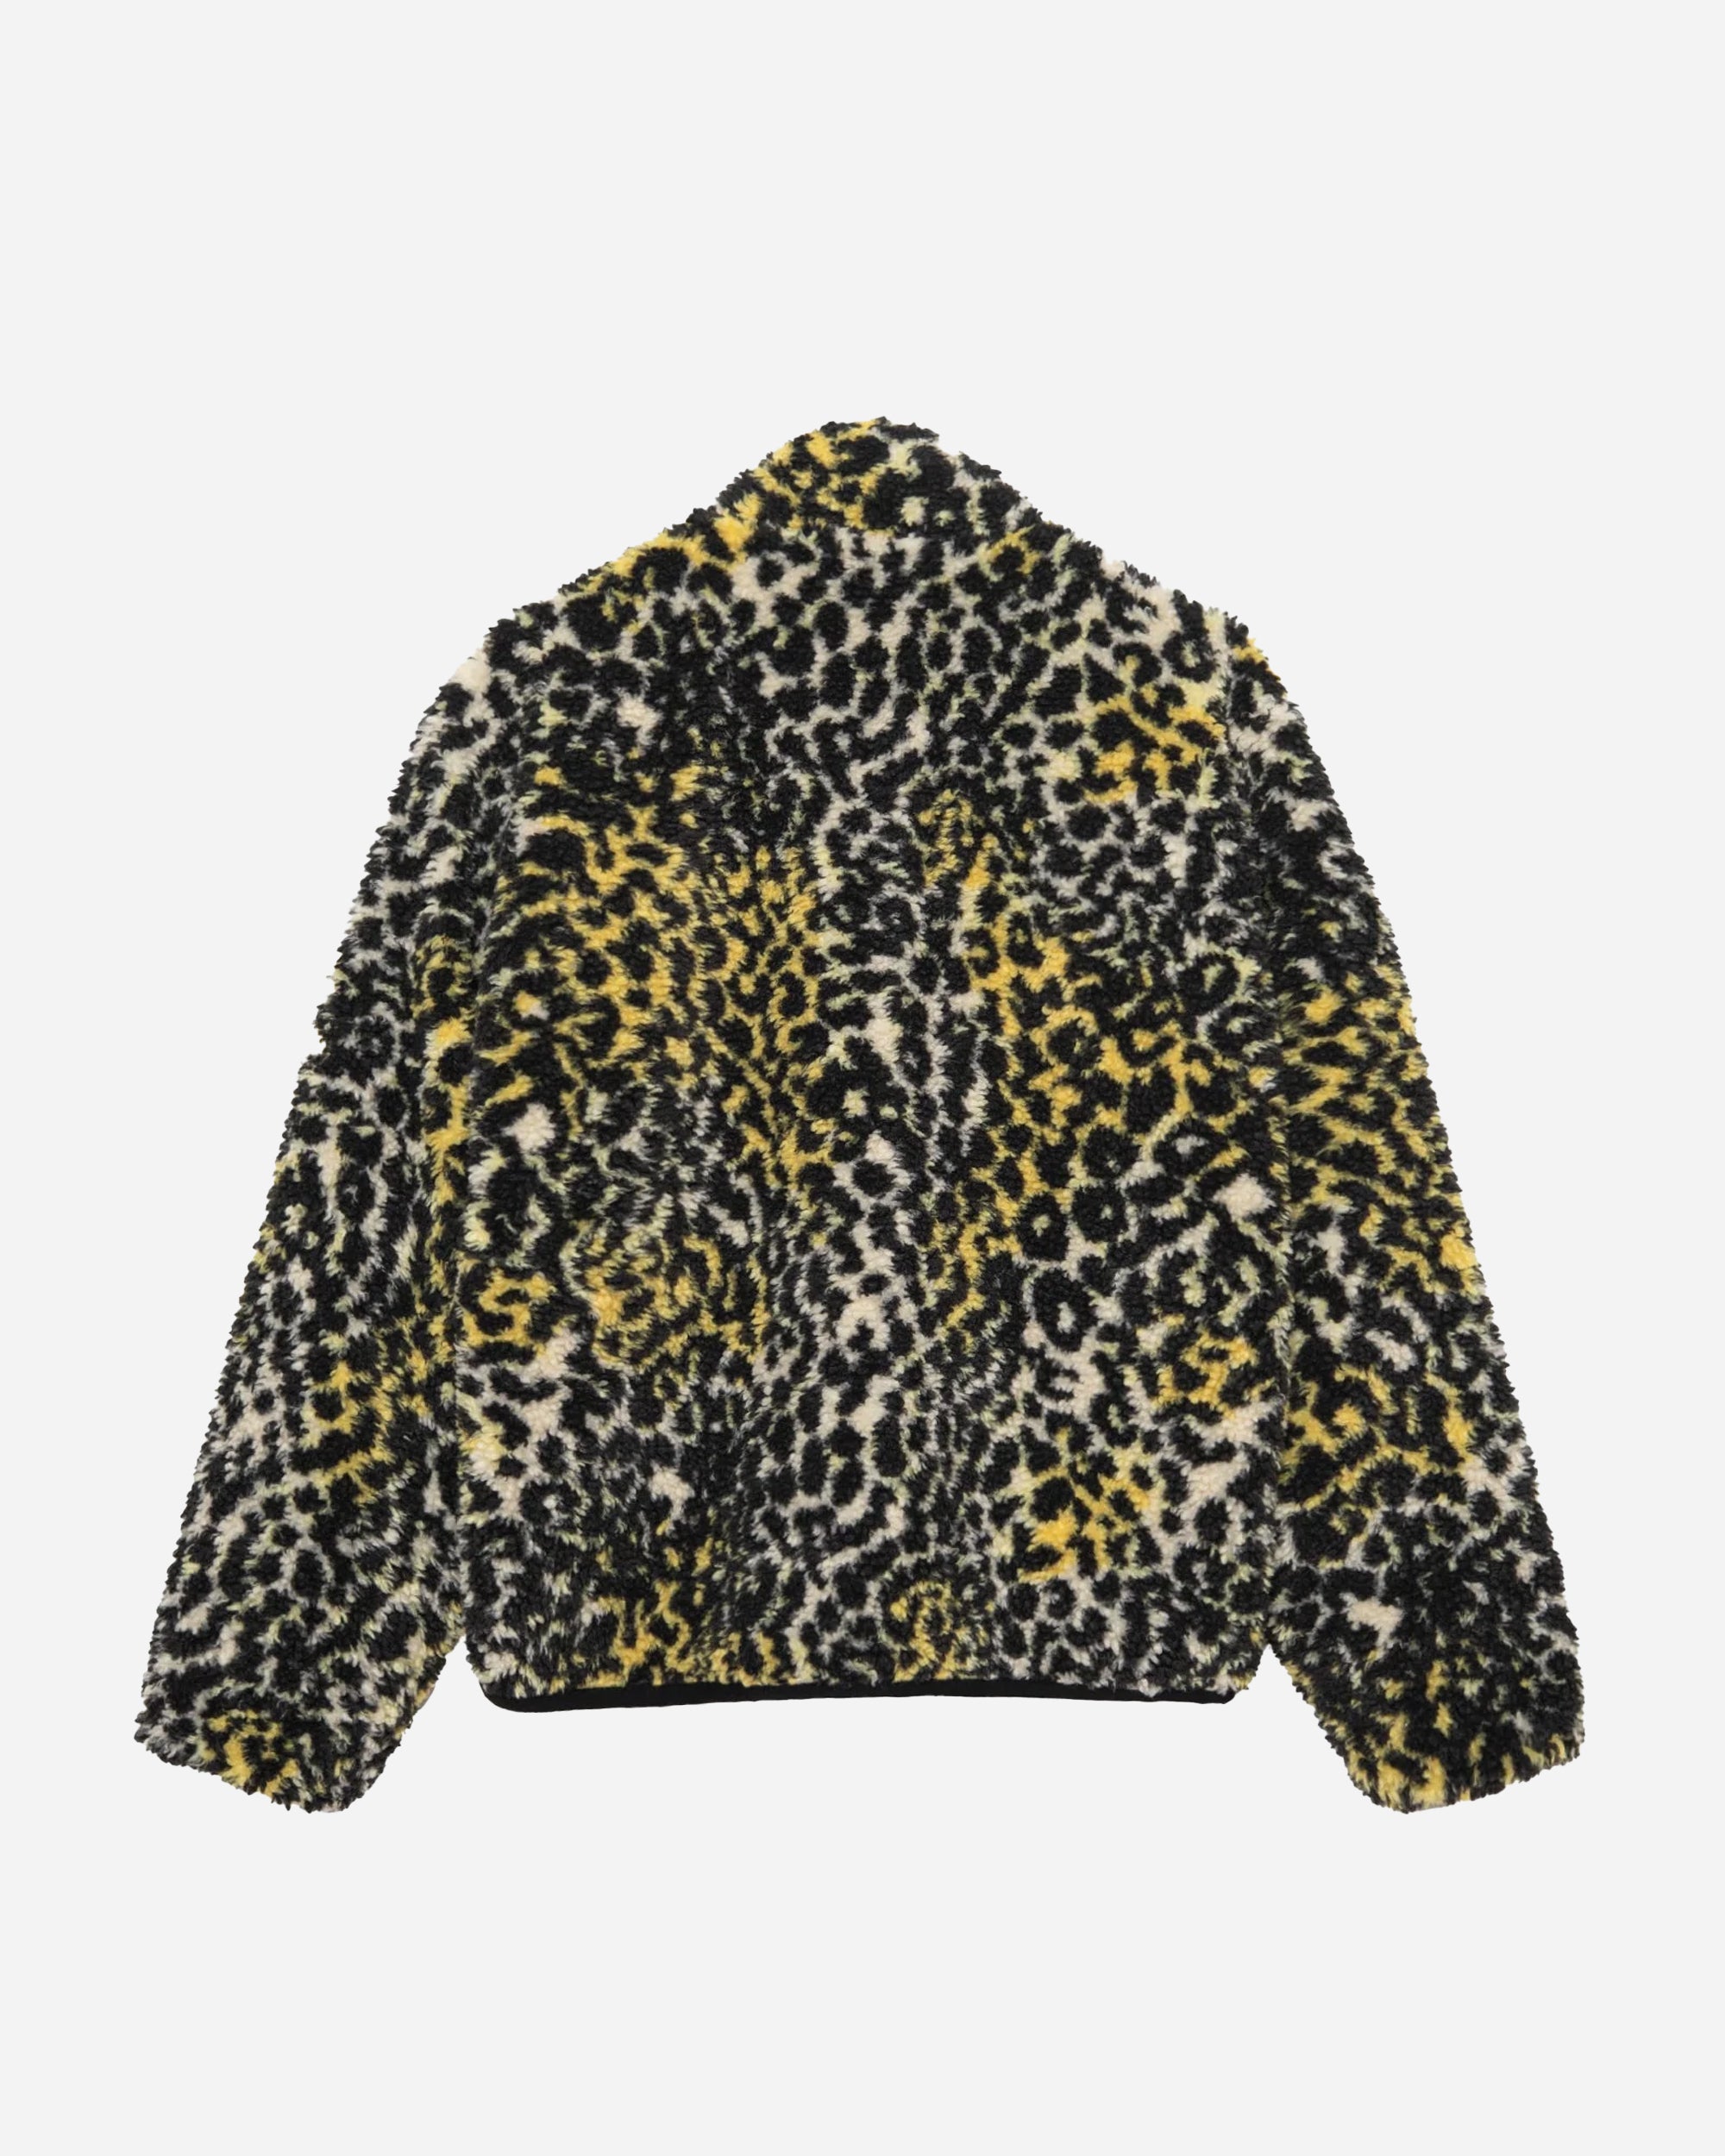 Stüssy Sherpa Reversible Jacket yellow leopard 118529-3157